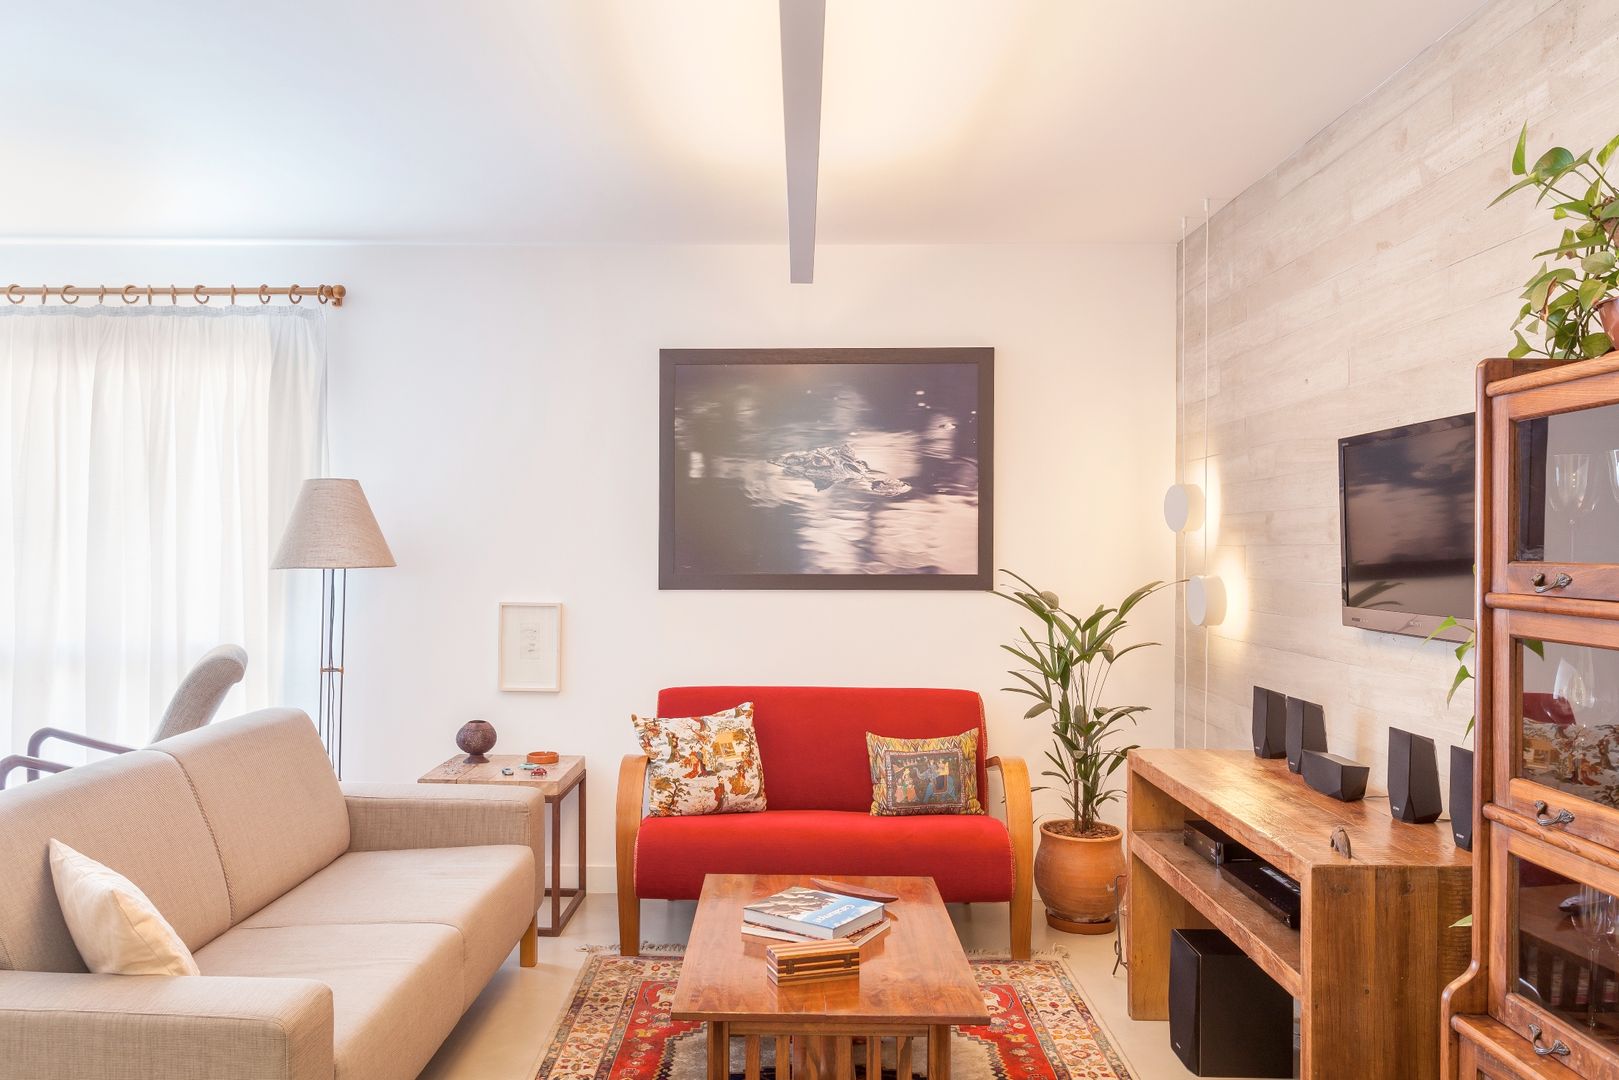 Apartamento do Amigo Calculista, Nautilo Arquitetura & Gerenciamento Nautilo Arquitetura & Gerenciamento Modern Living Room Concrete